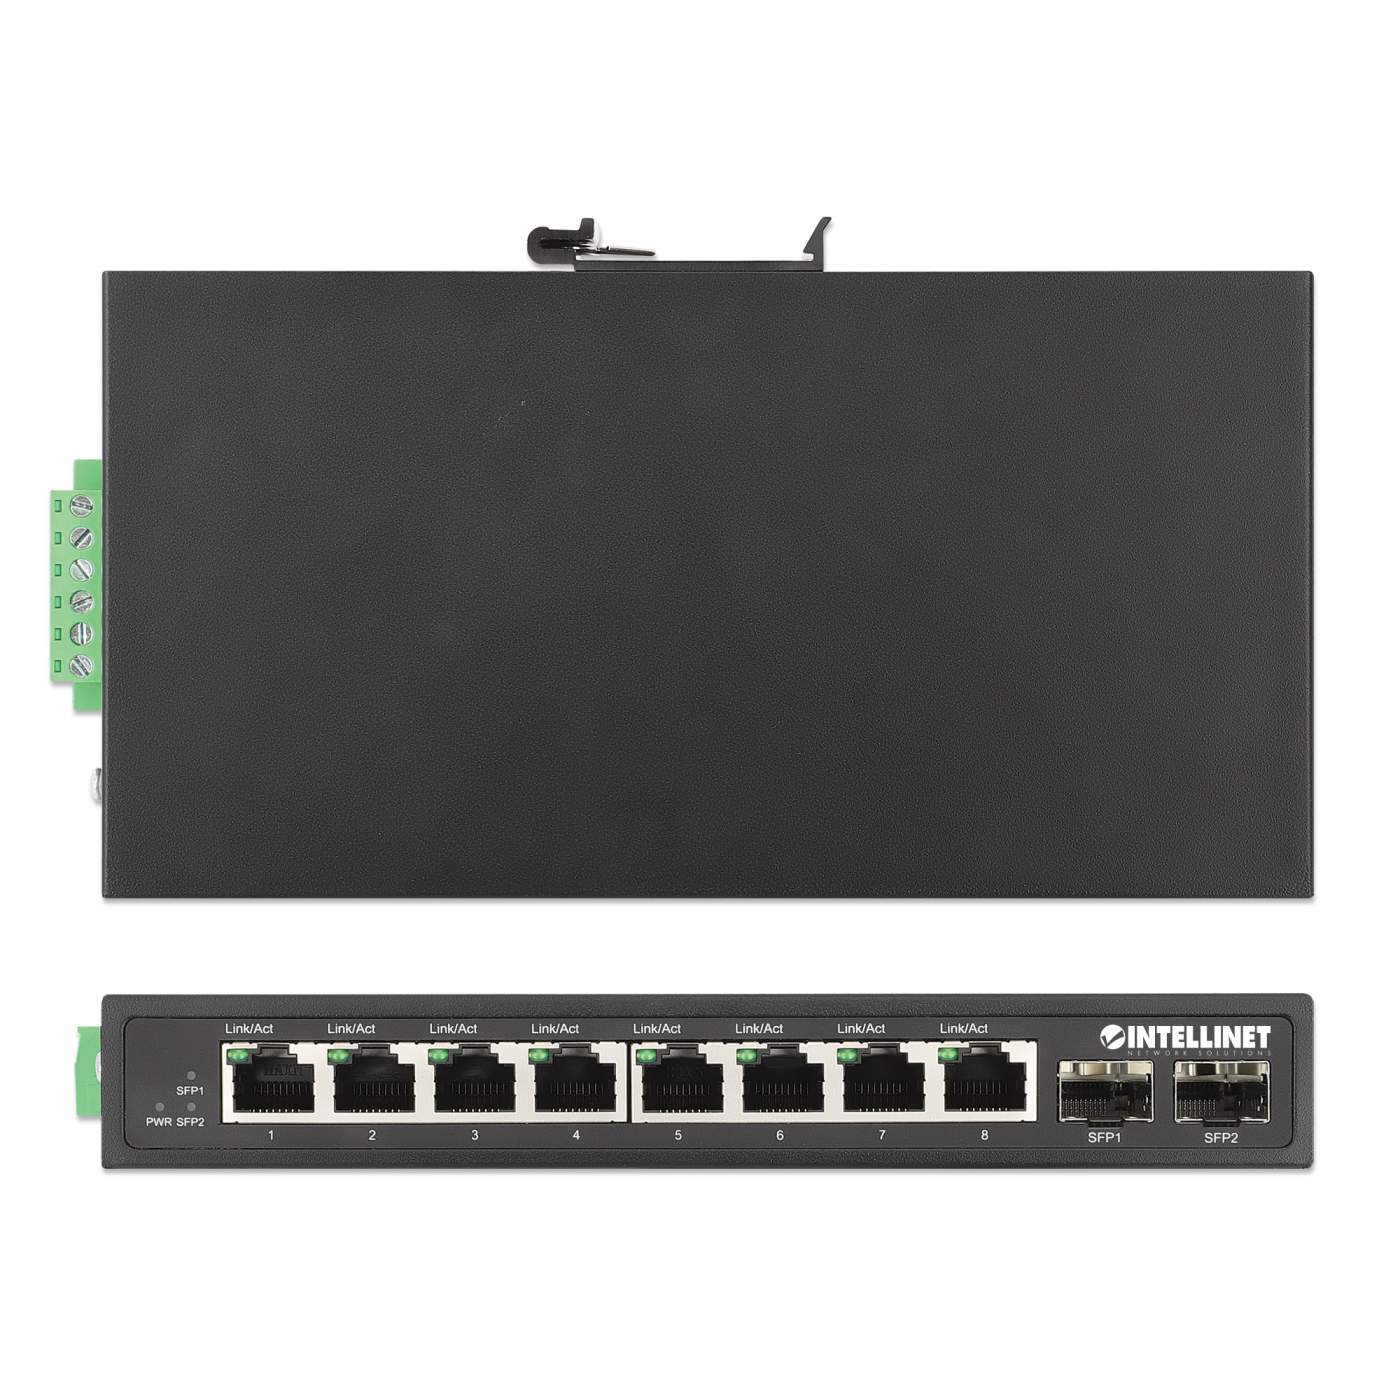 8-Port Fanless Gigabit L2 Unmanaged Switch, S1300-8T - QSFPTEK